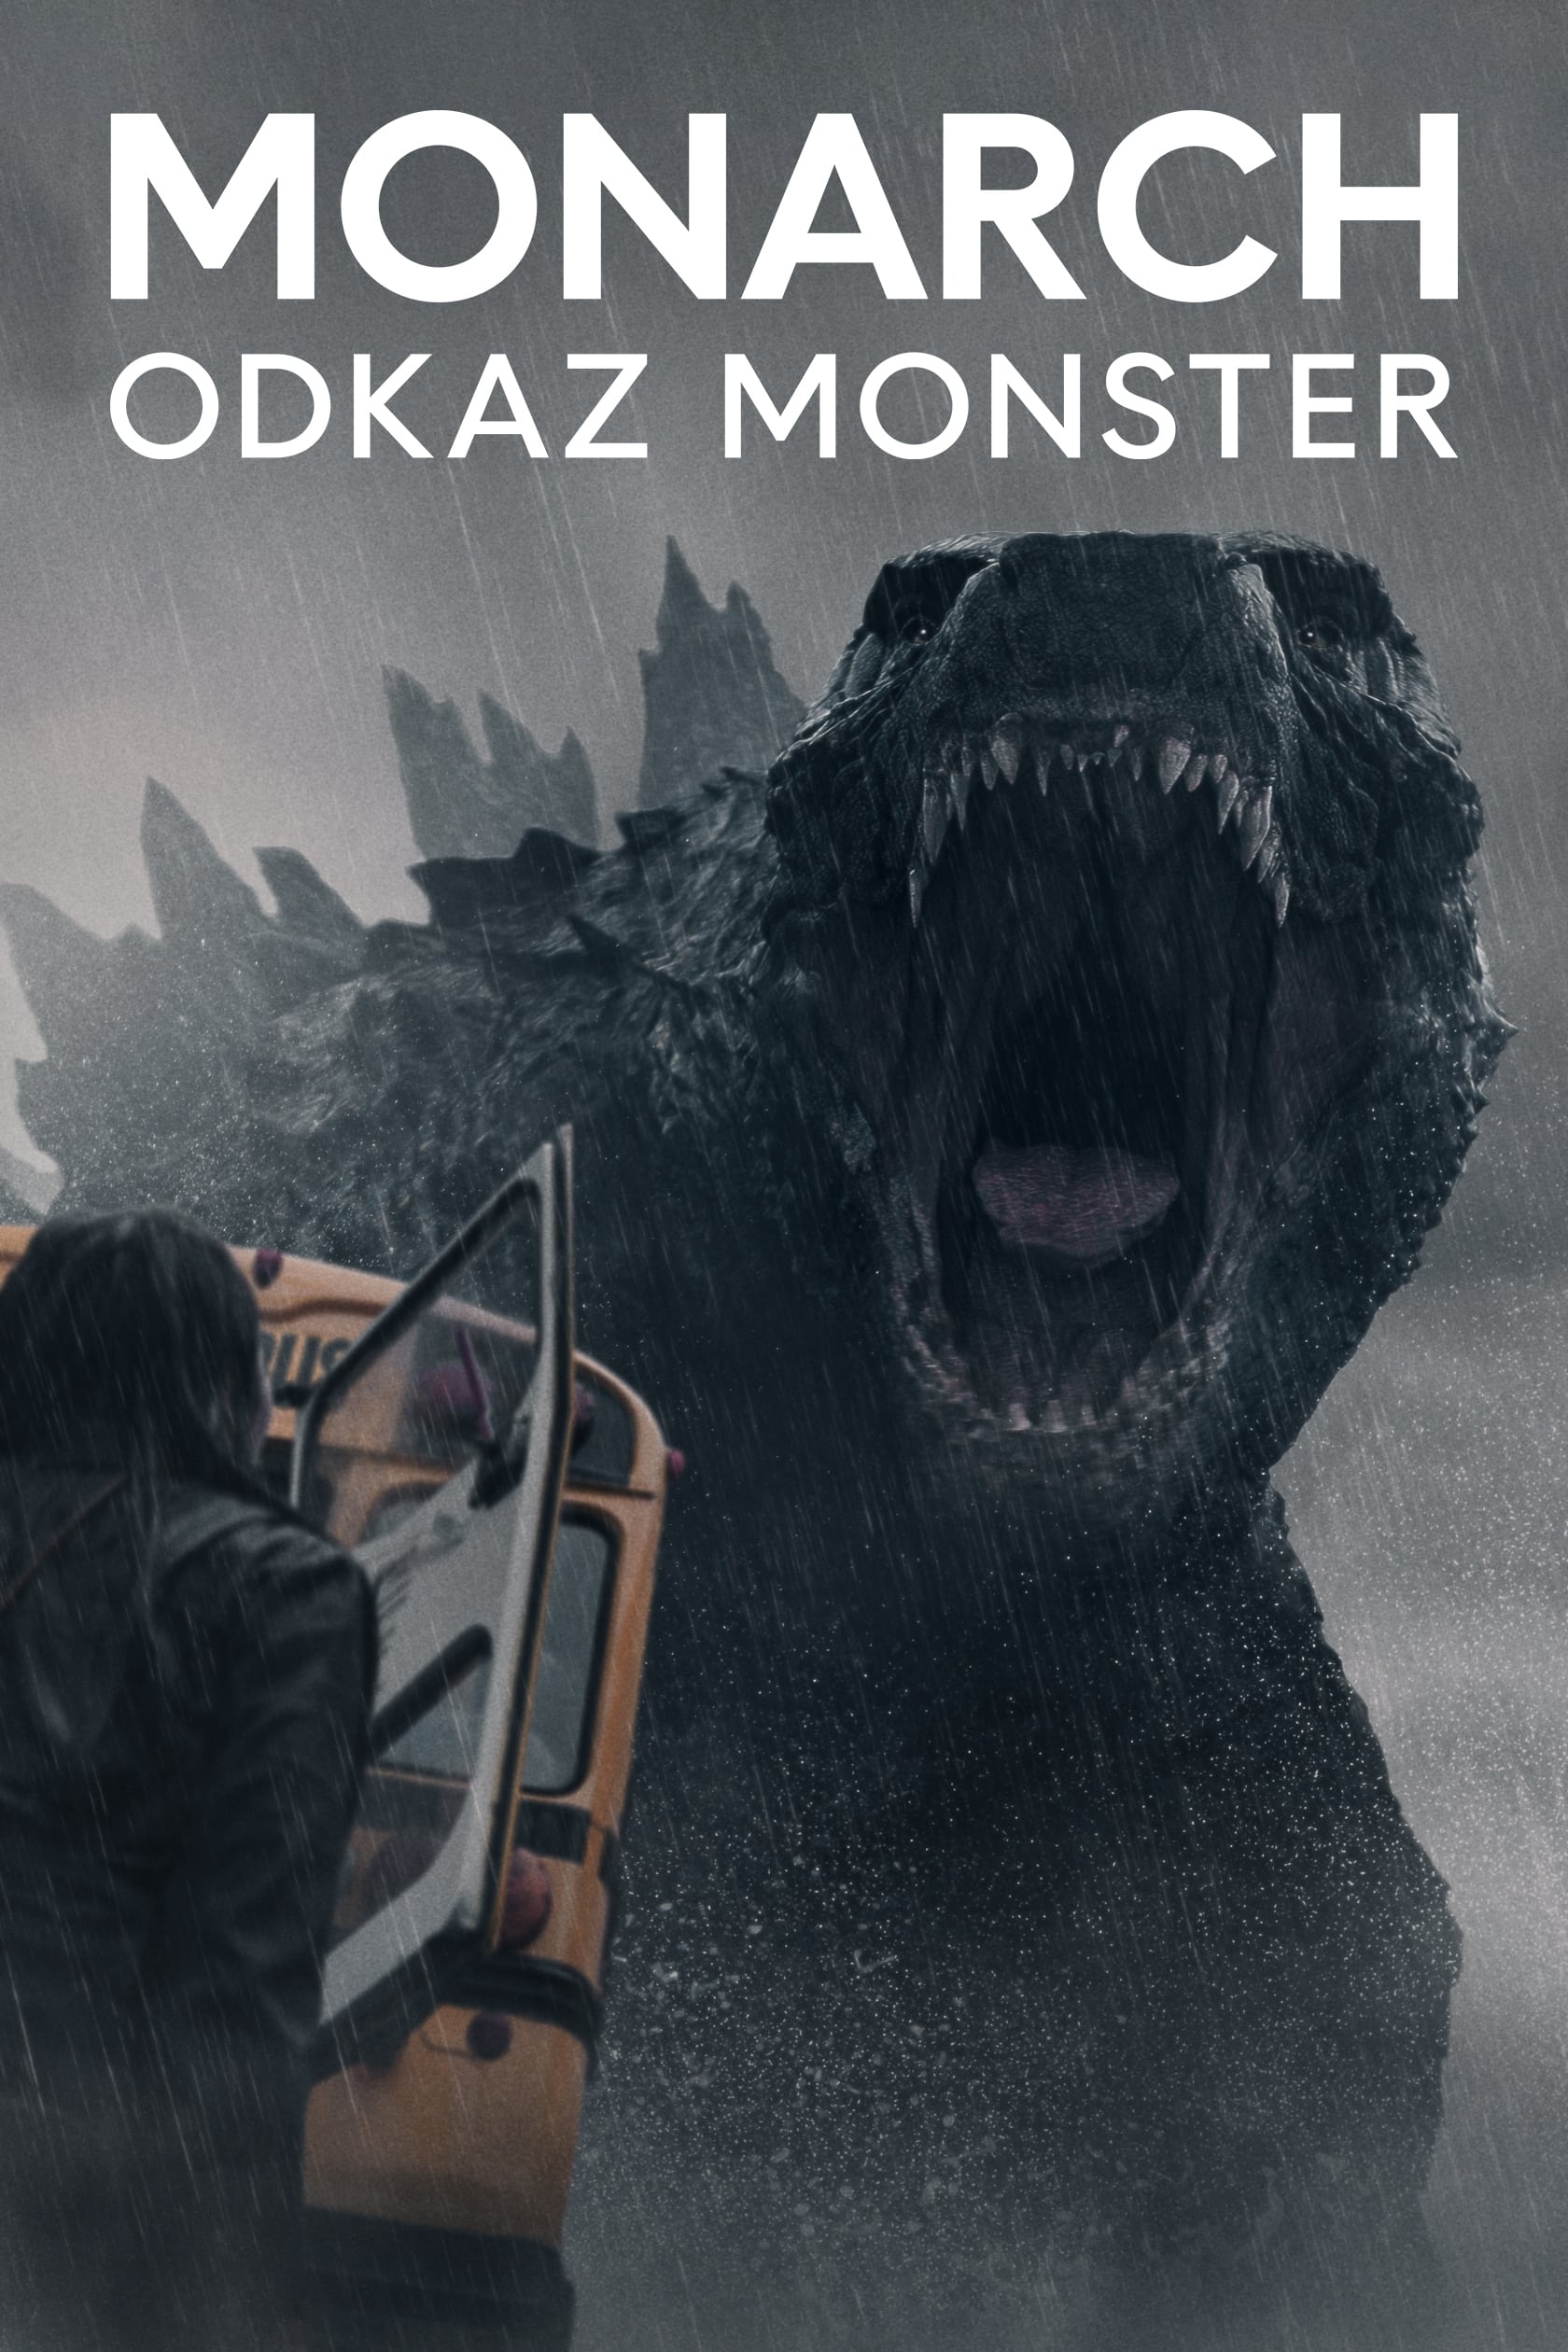 Plakát pro film “Monarch: Odkaz monster”